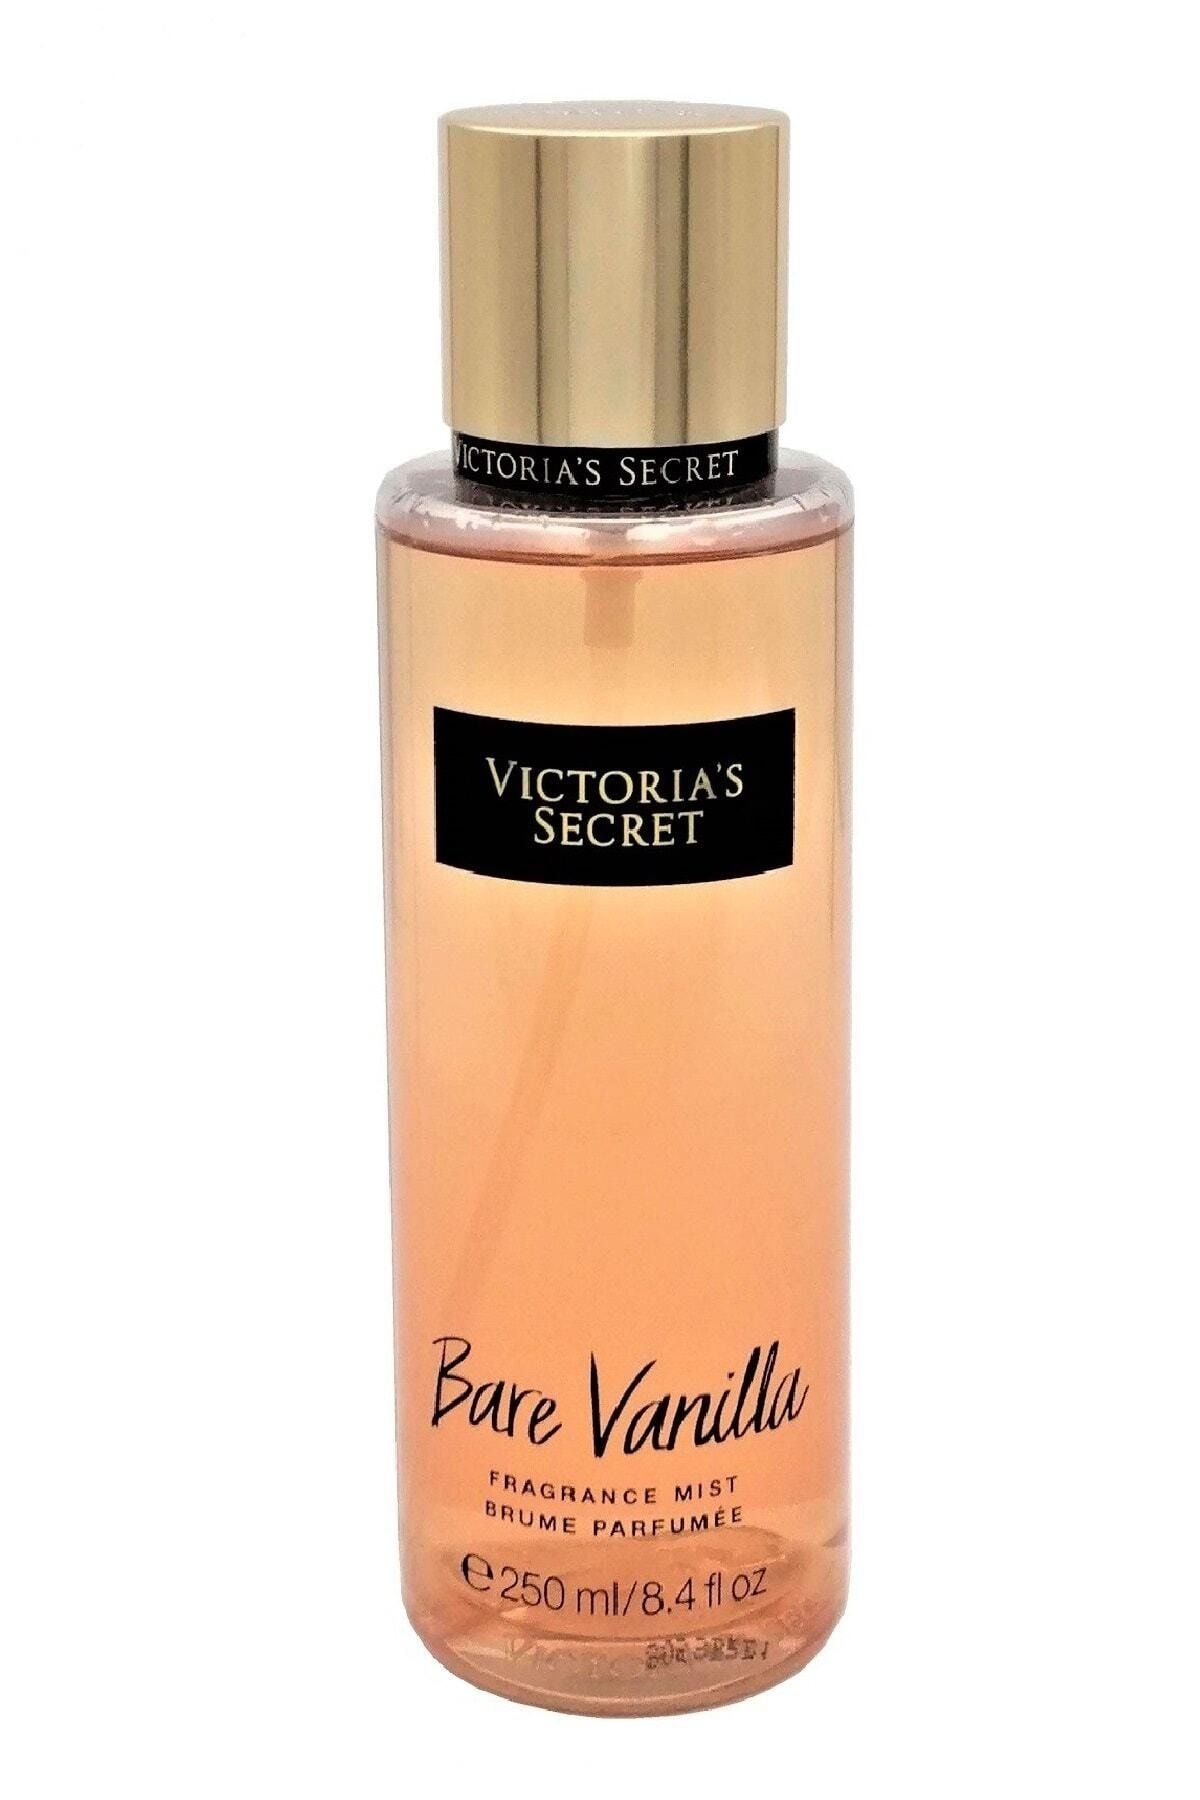 VICTORIA'S SECRET Perfume Body Mist 250ml Oil Based Fragrance Long